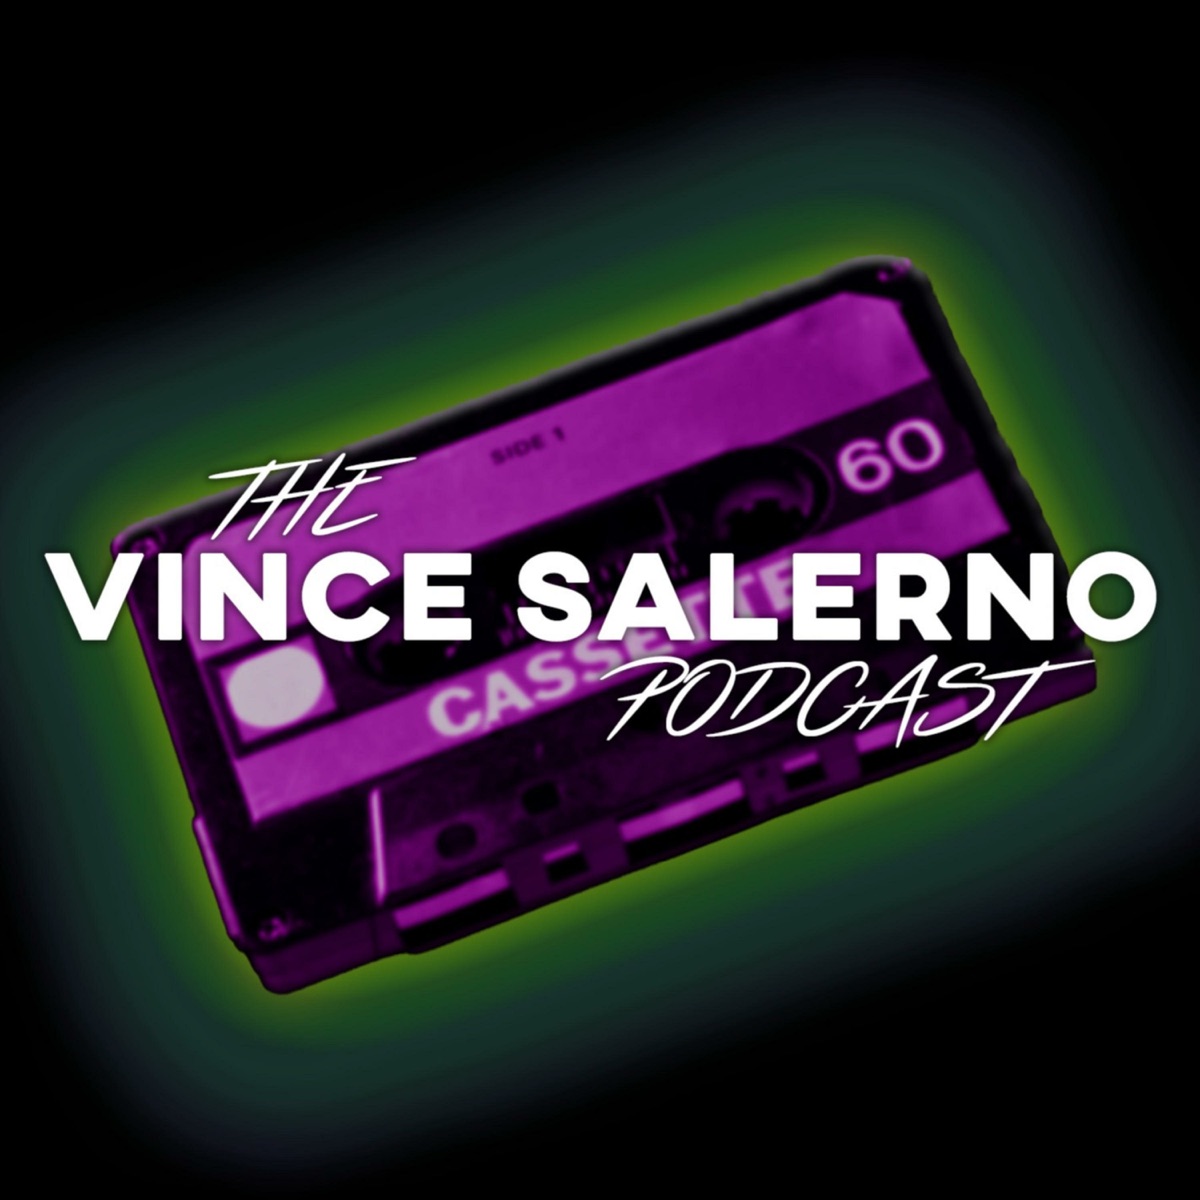 The Vince Salerno Podcast – Podcast – Podtail